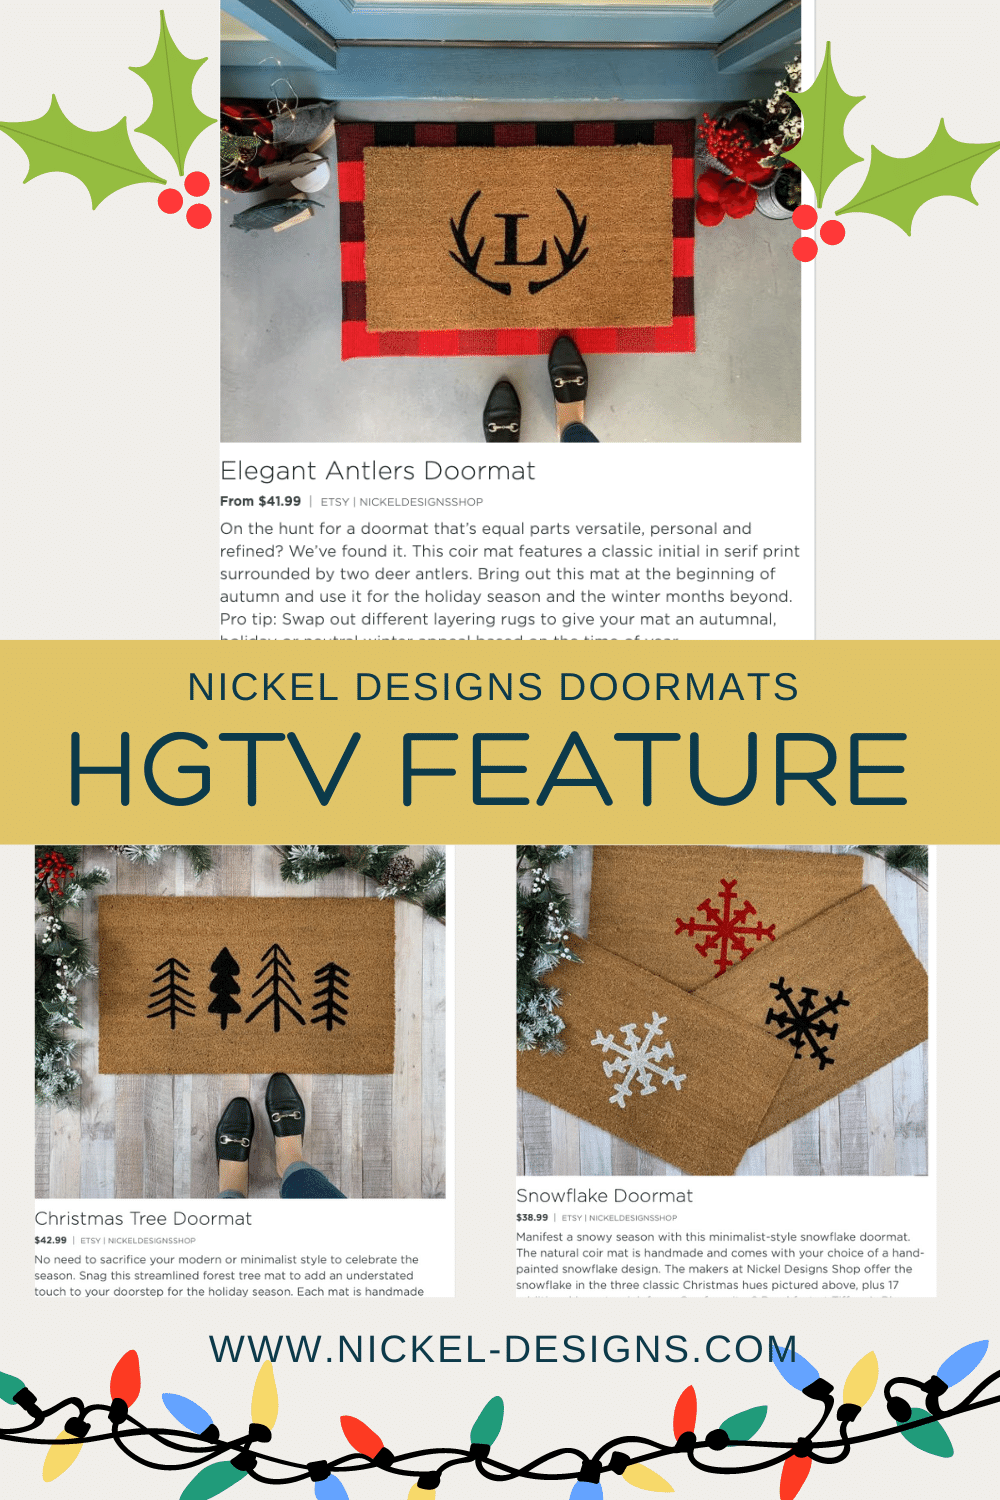 Nickel Designs' Christmas Doormats have been featured in HGTV (again!)